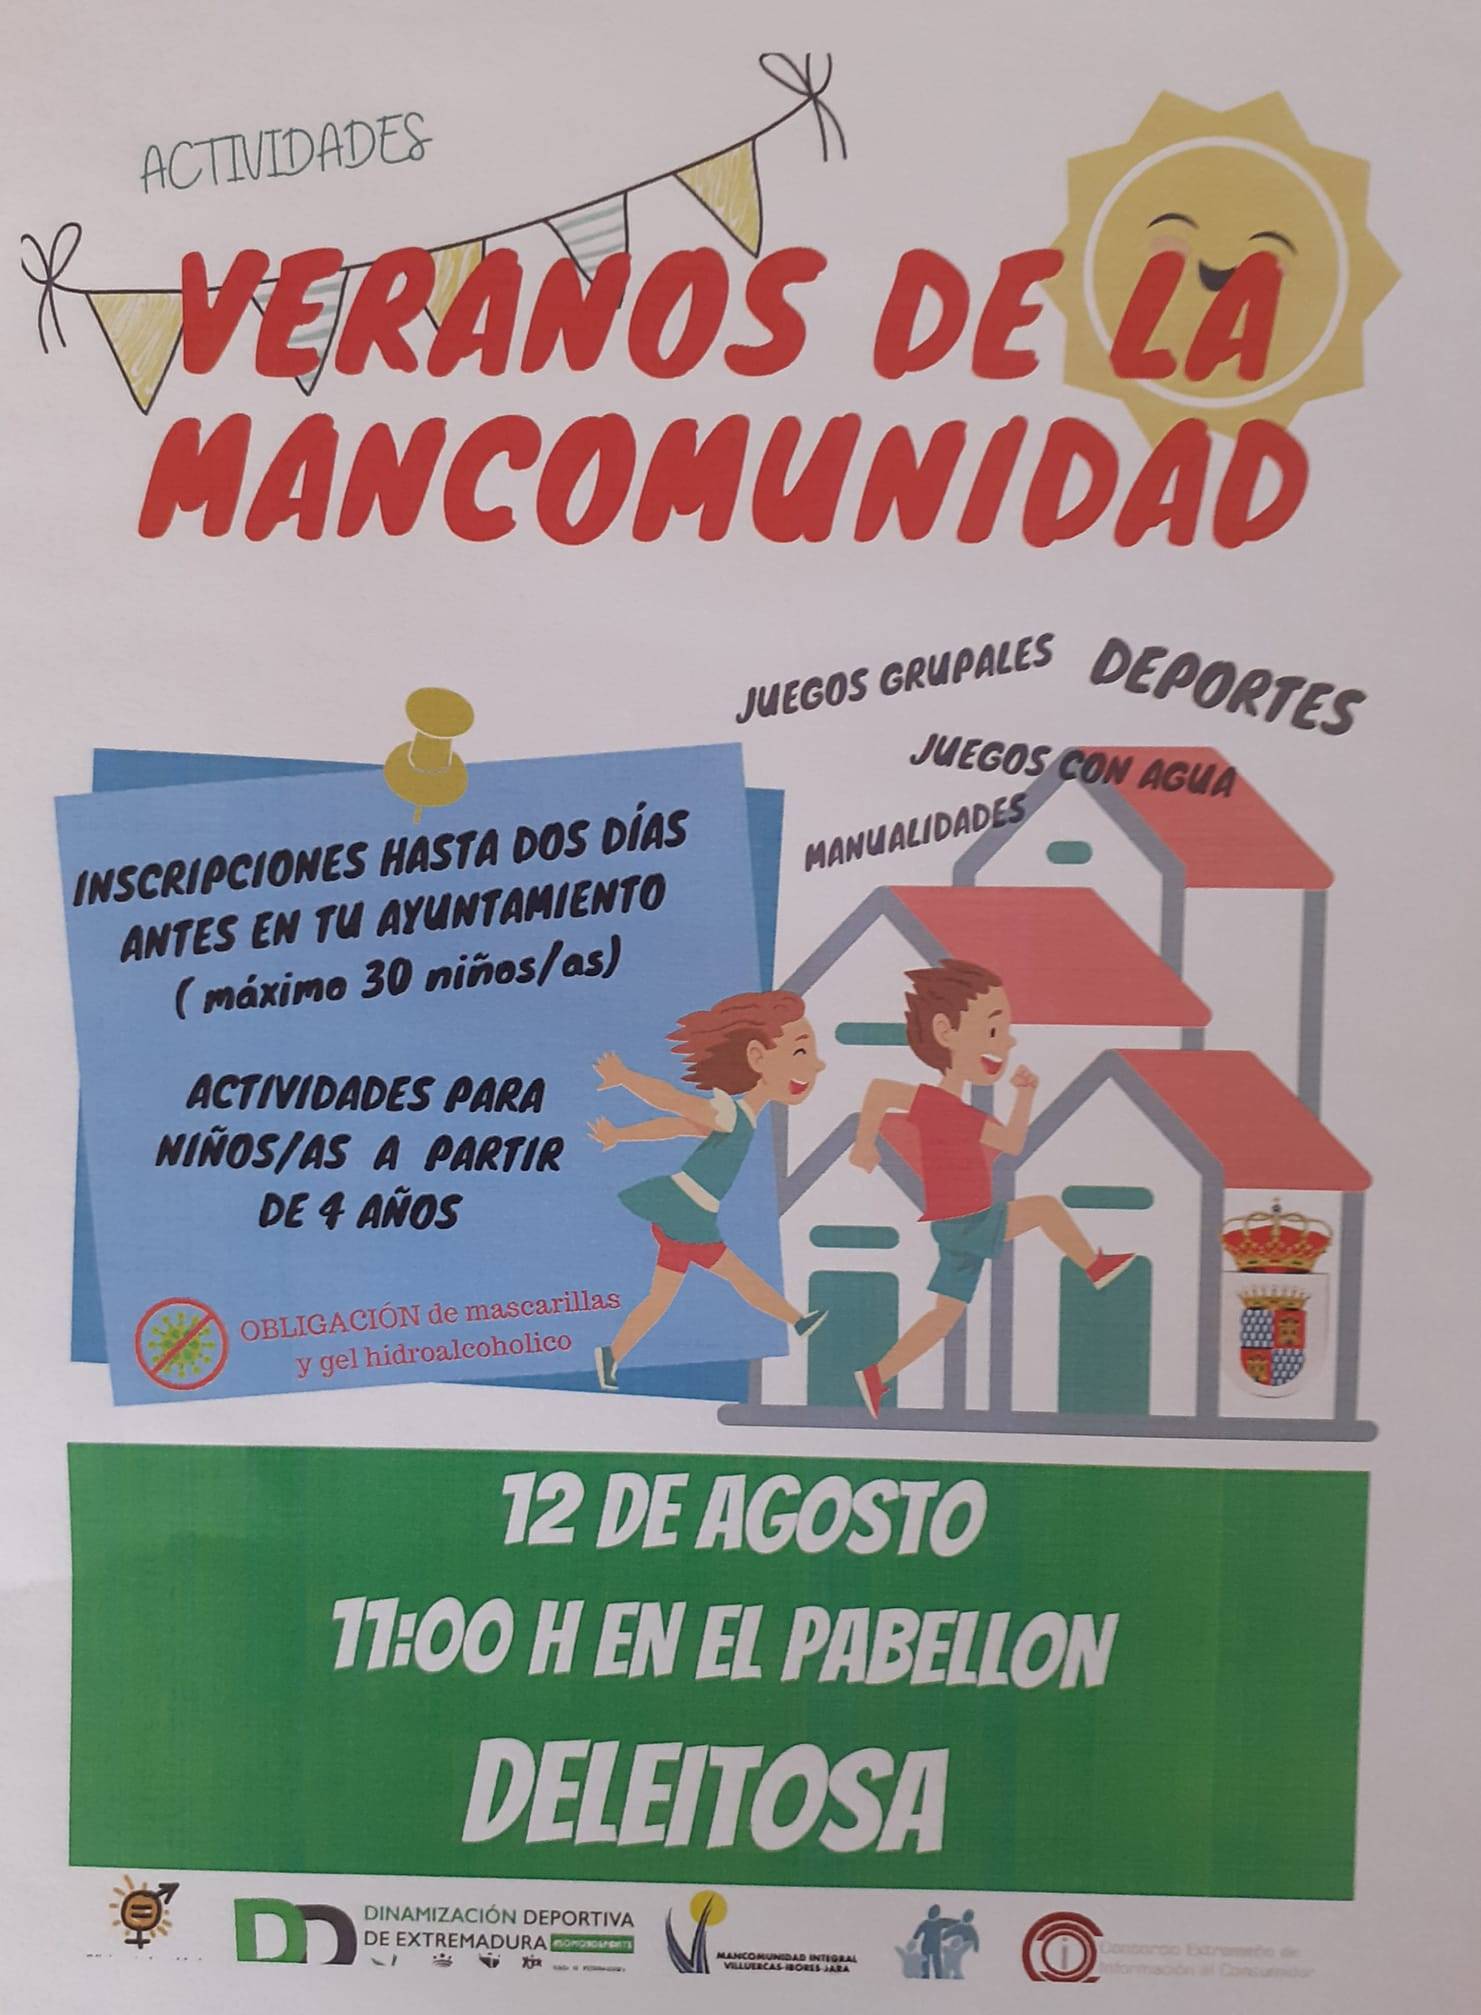 Veranos de la Mancomunidad (2021) - Deleitosa (Cáceres)